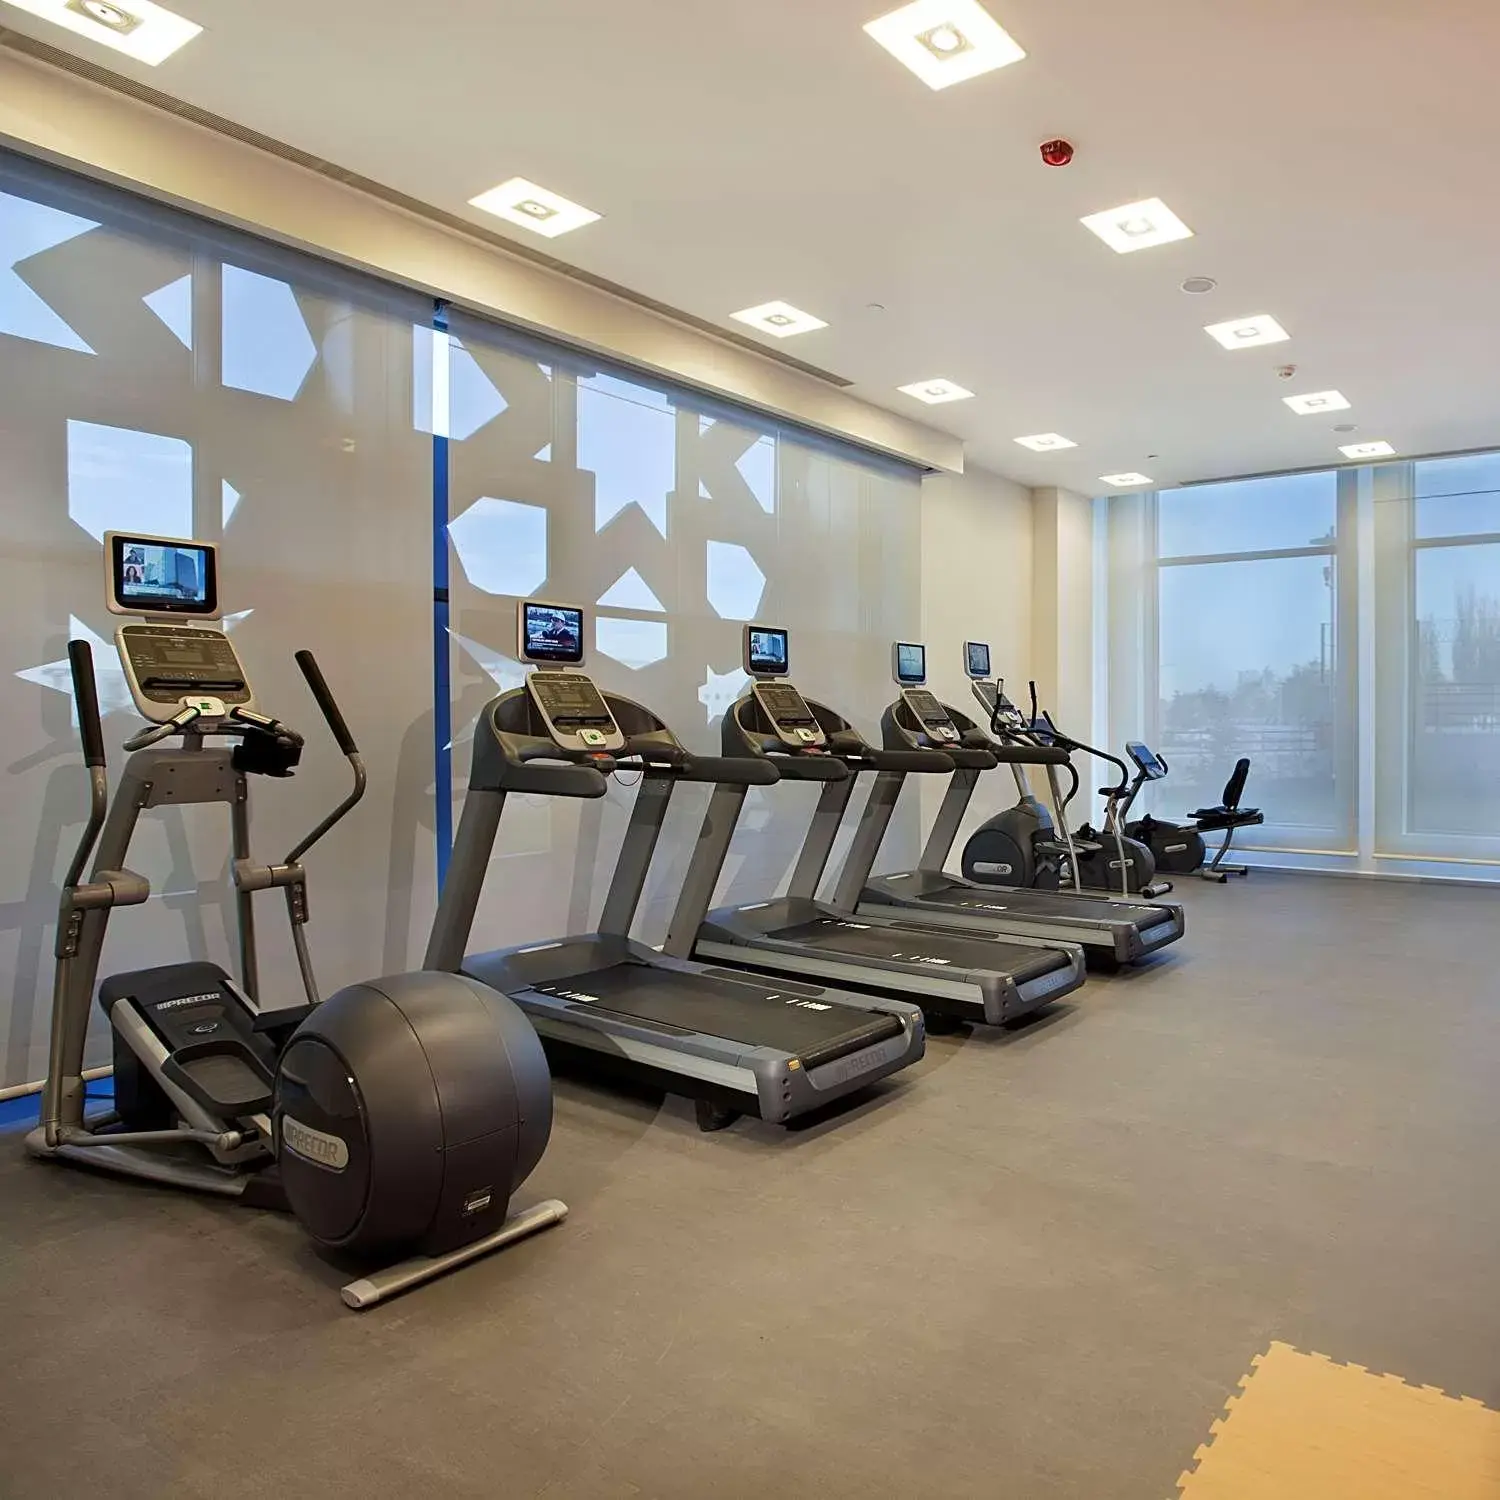 Fitness centre/facilities, Fitness Center/Facilities in Hilton Garden Inn Konya